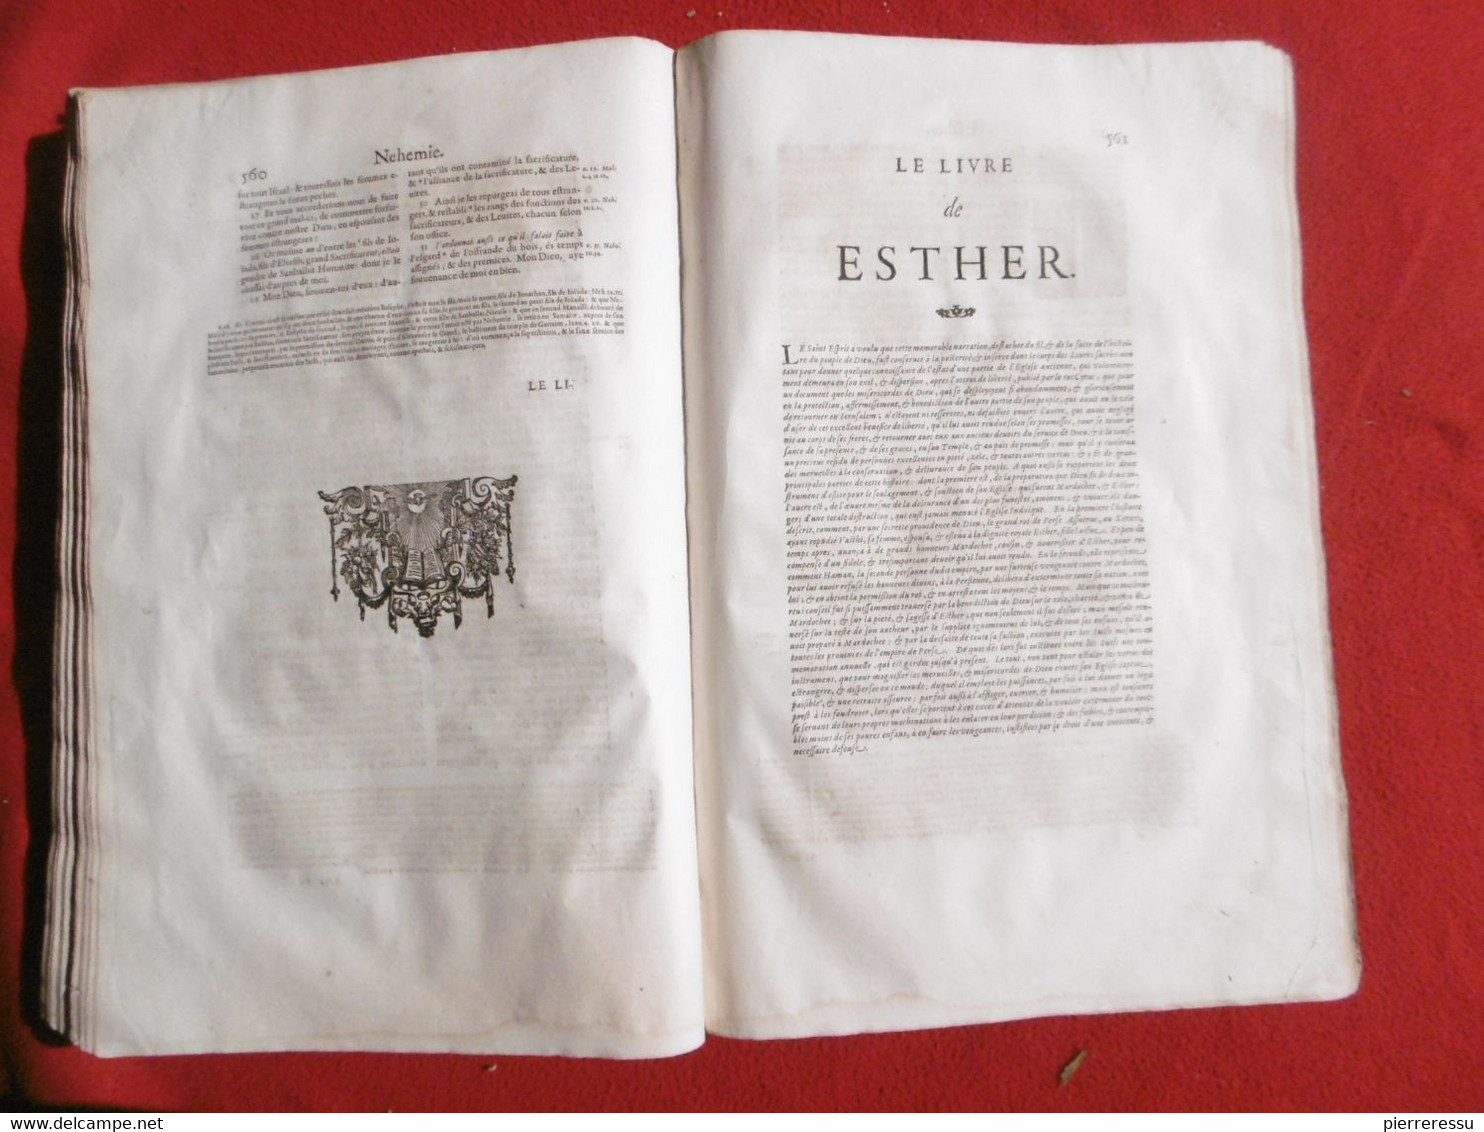 LA SAINTE BIBLE INTERPRETEE PAR JEAN DIODATI 1644 GENEVE PIERRE CHOUET RRRRRRRRRRRR